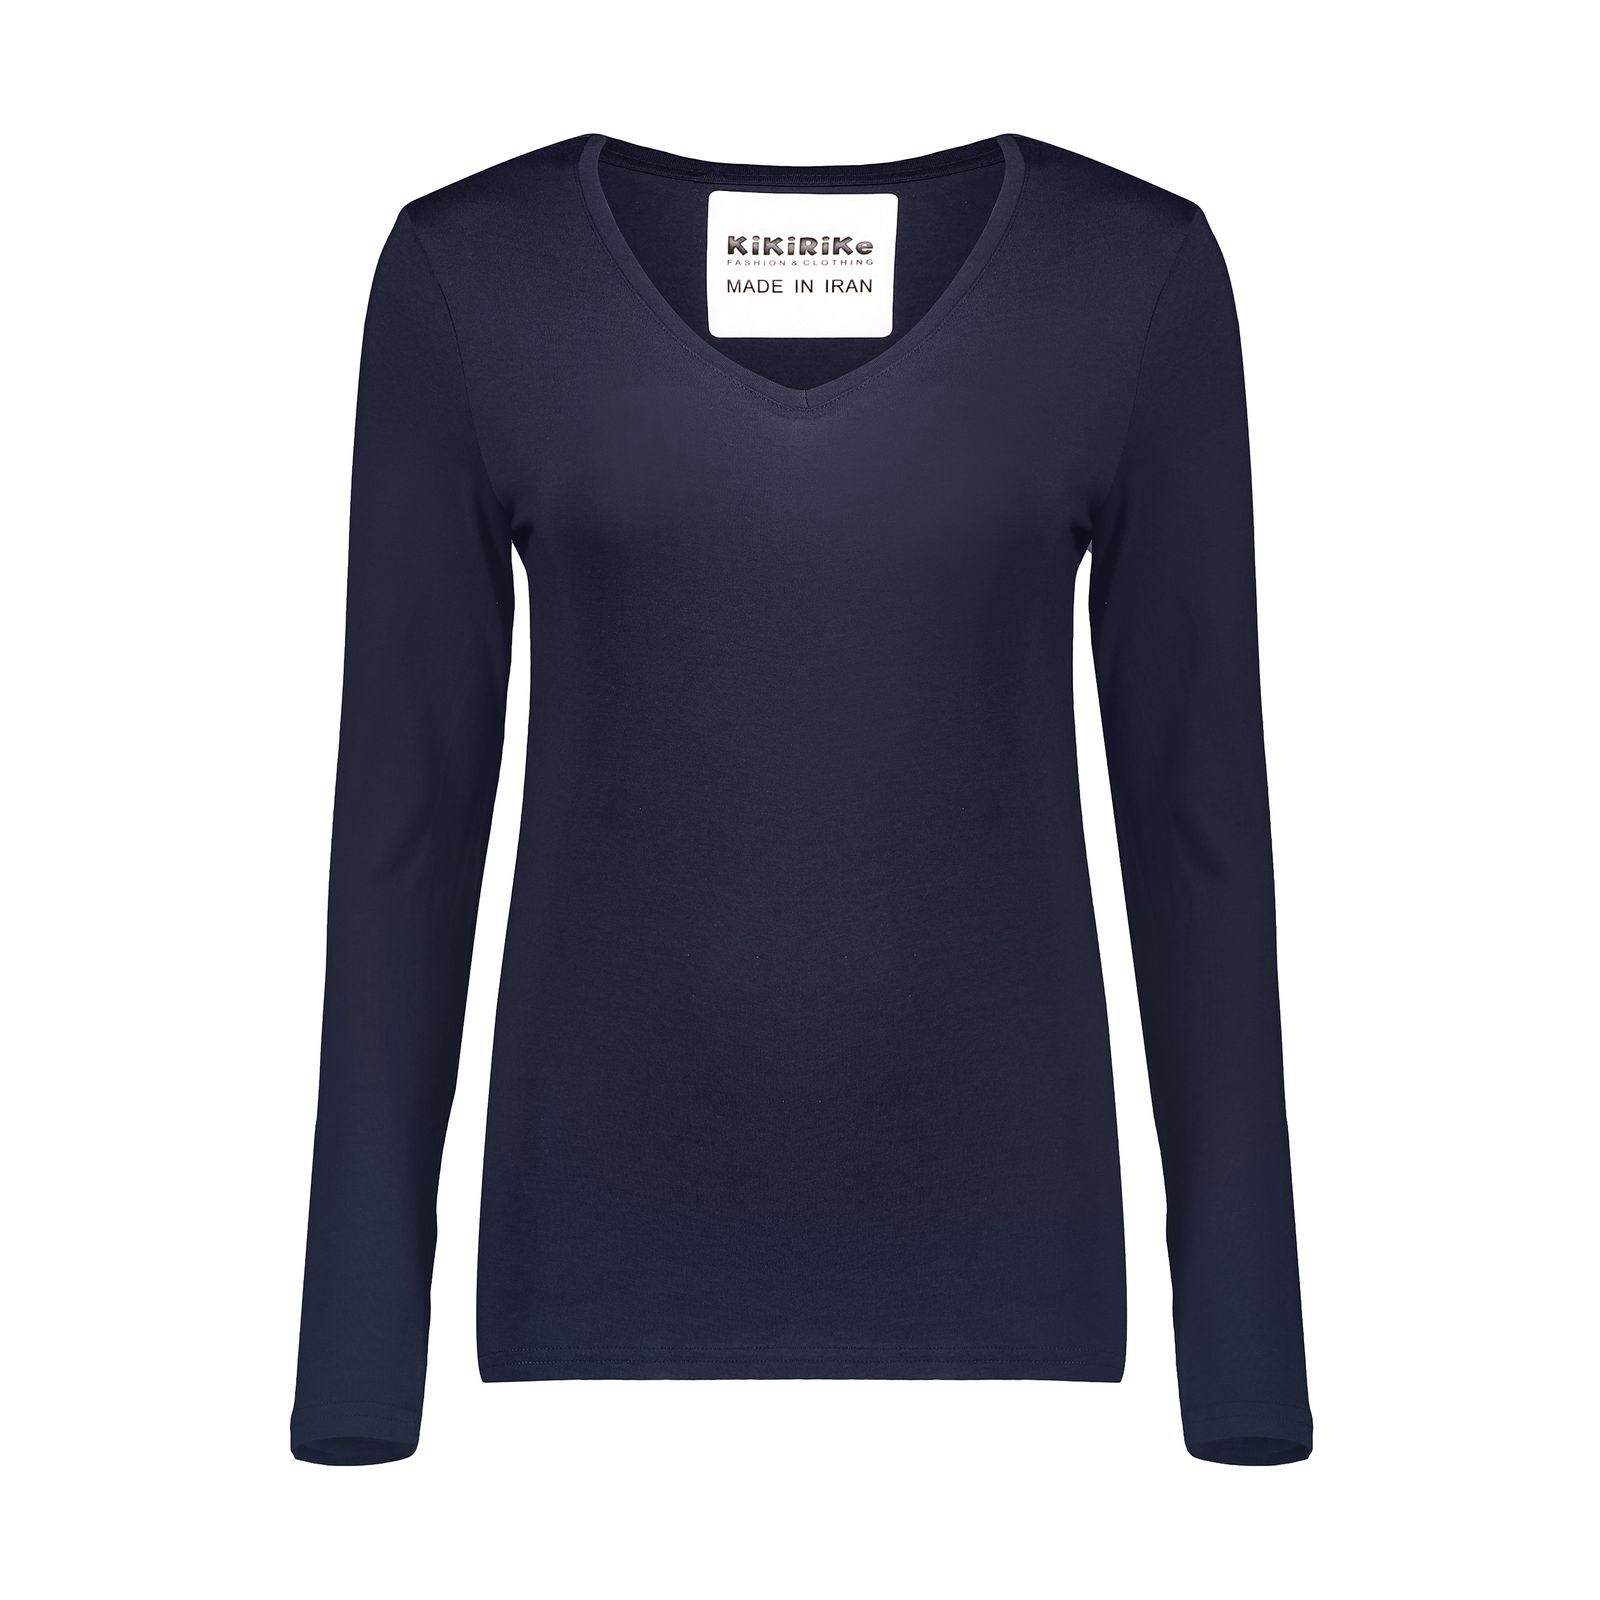 تی شرت زنانه کیکی رایکی مدل BB20155-200 -  - 1